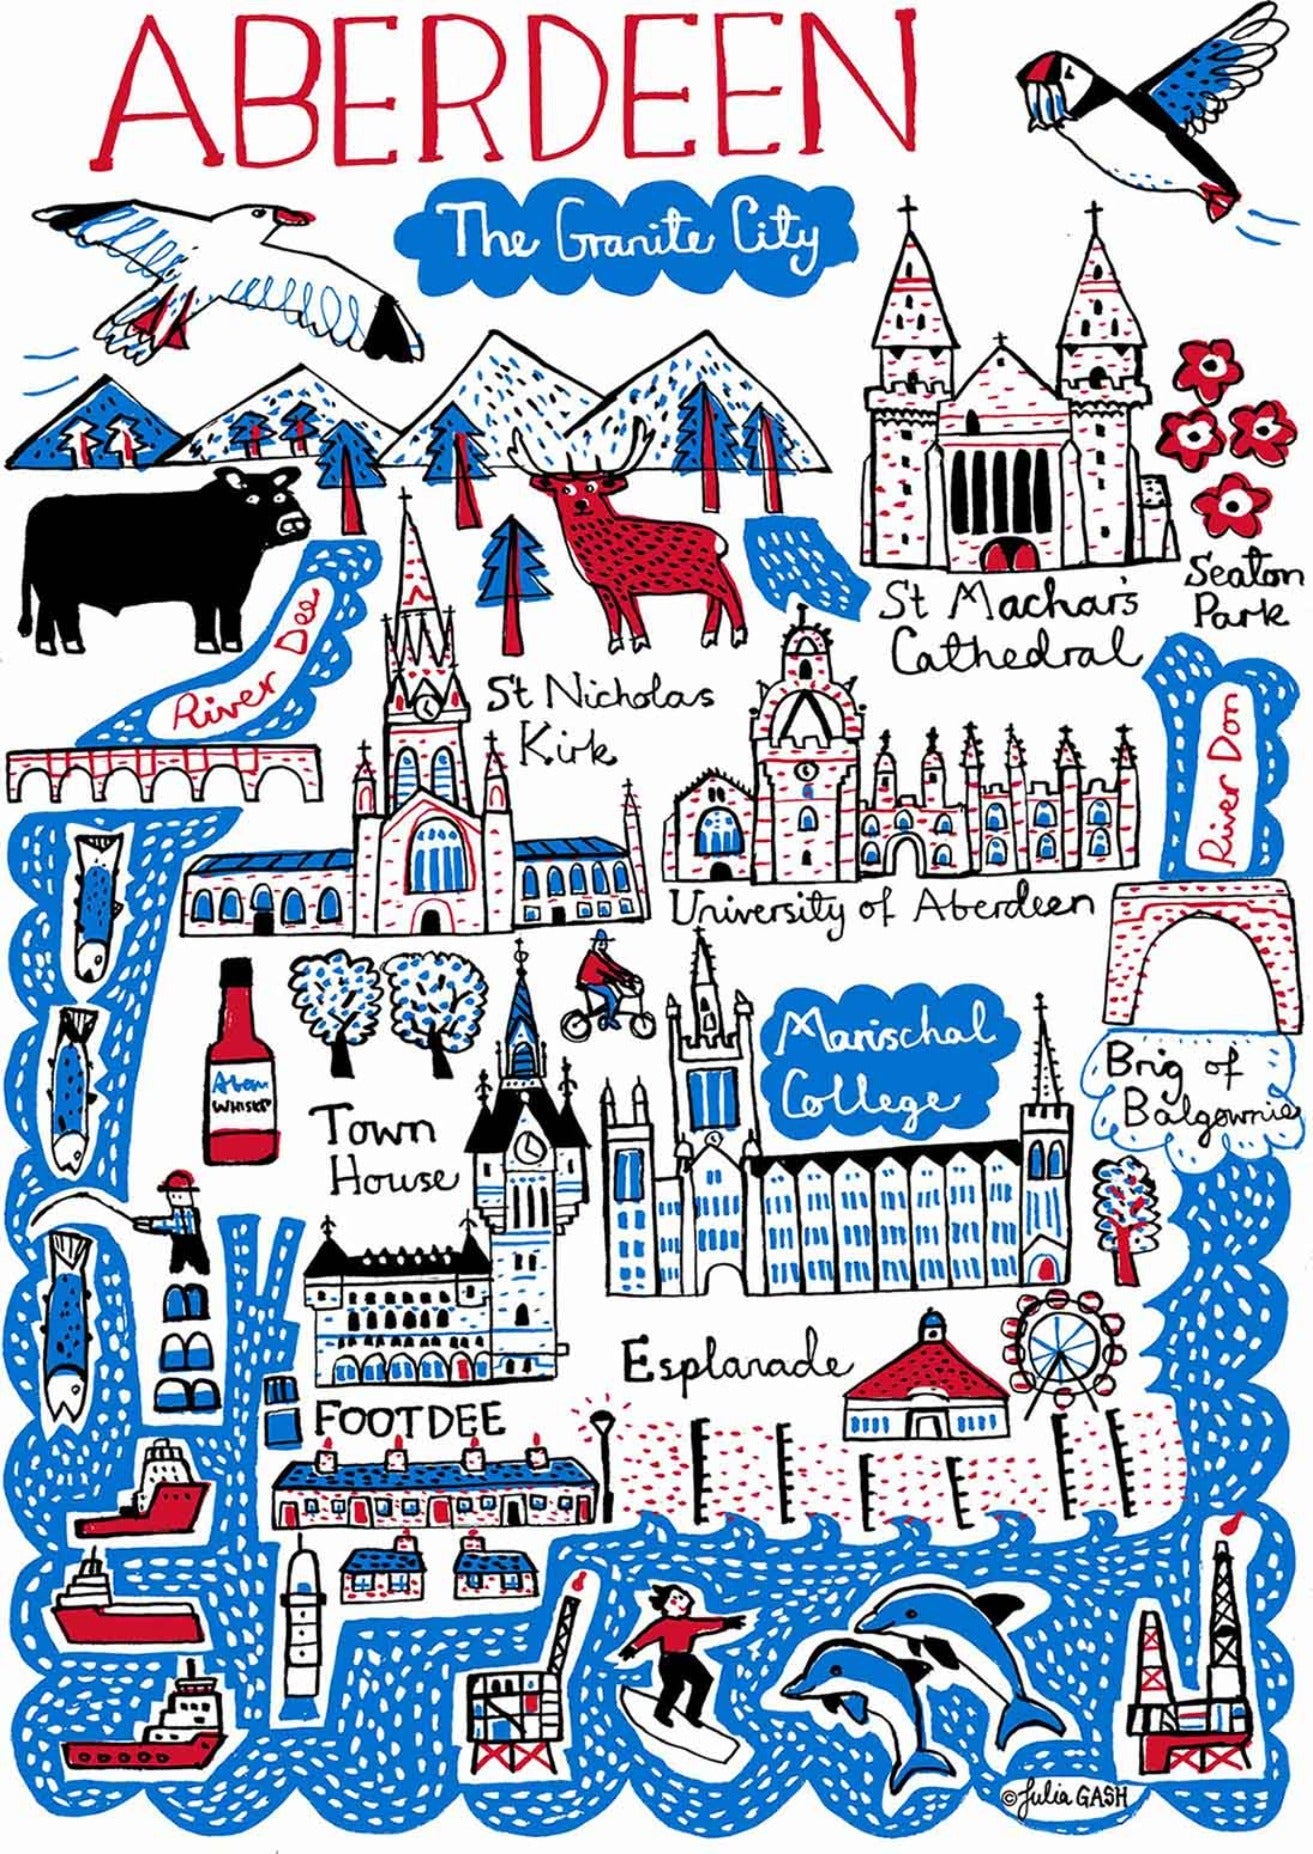 Aberdeen Postcard - Julia Gash